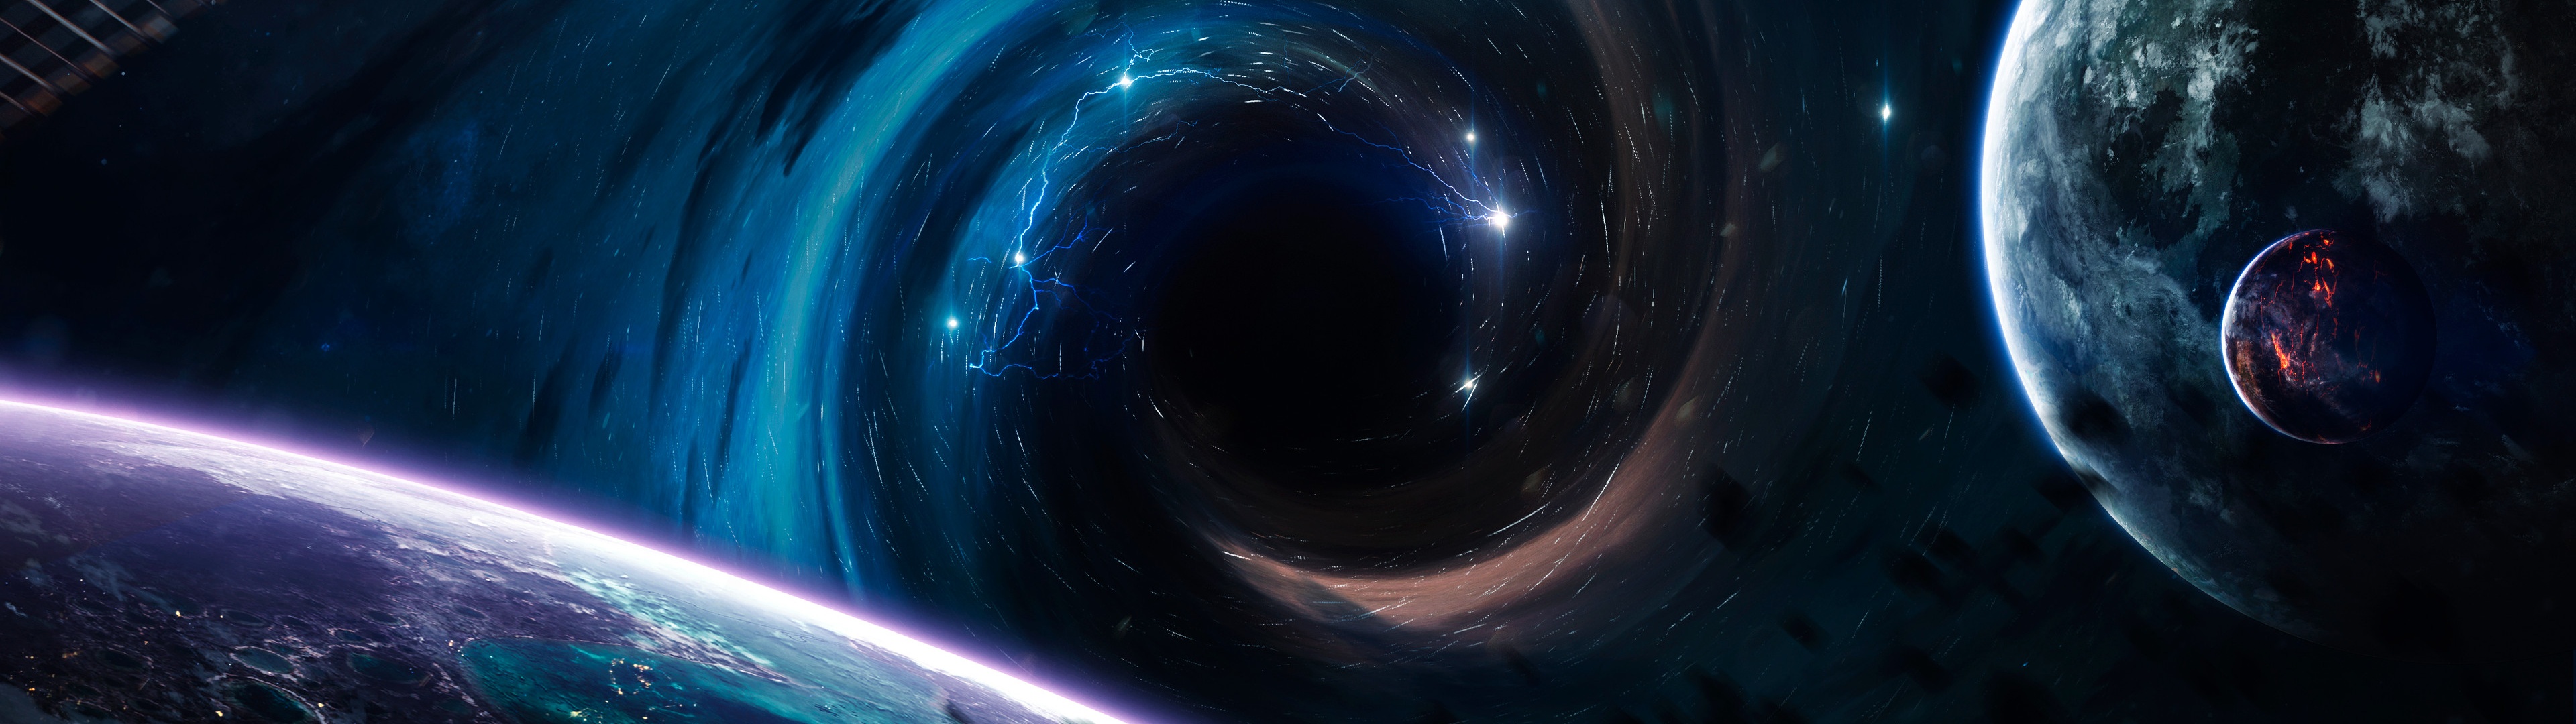 Đen hố có thể là một trong những điều bí ẩn và huyền bí nhất của vũ trụ. Tuy nhiên, những hình ảnh về đen hố sẽ khiến bạn cảm thấy như đang trải nghiệm và tìm hiểu về một vùng thế giới đầy thách thức và tiềm năng.